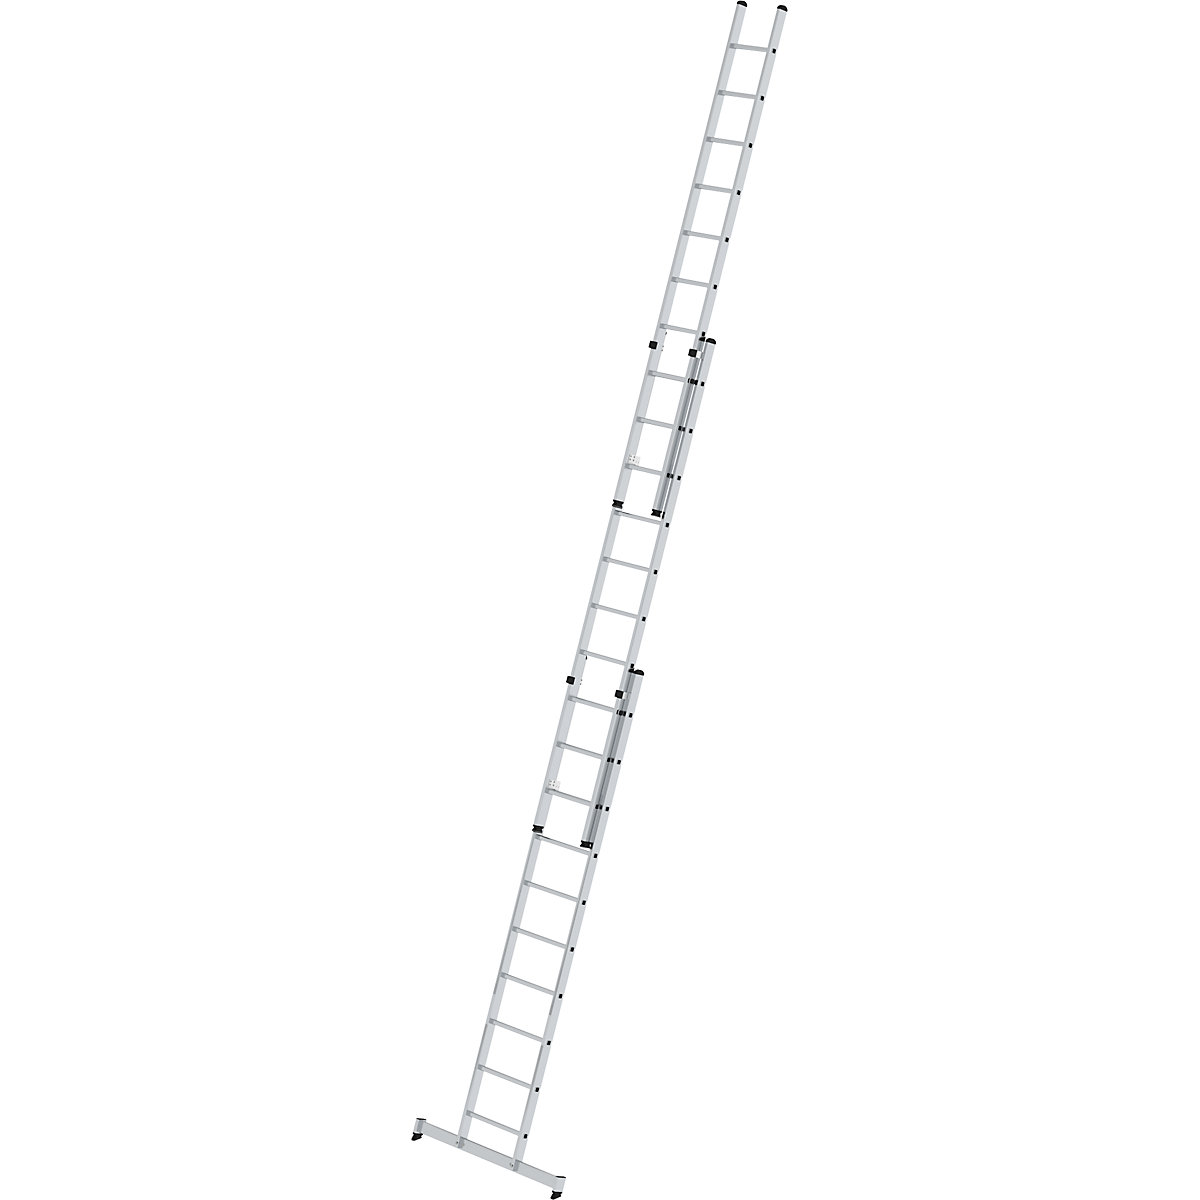 Escada de encosto ajustável em altura – MUNK, escada de regulação por deslize, 3 peças com travessa nivello®, 3 x 10 degraus